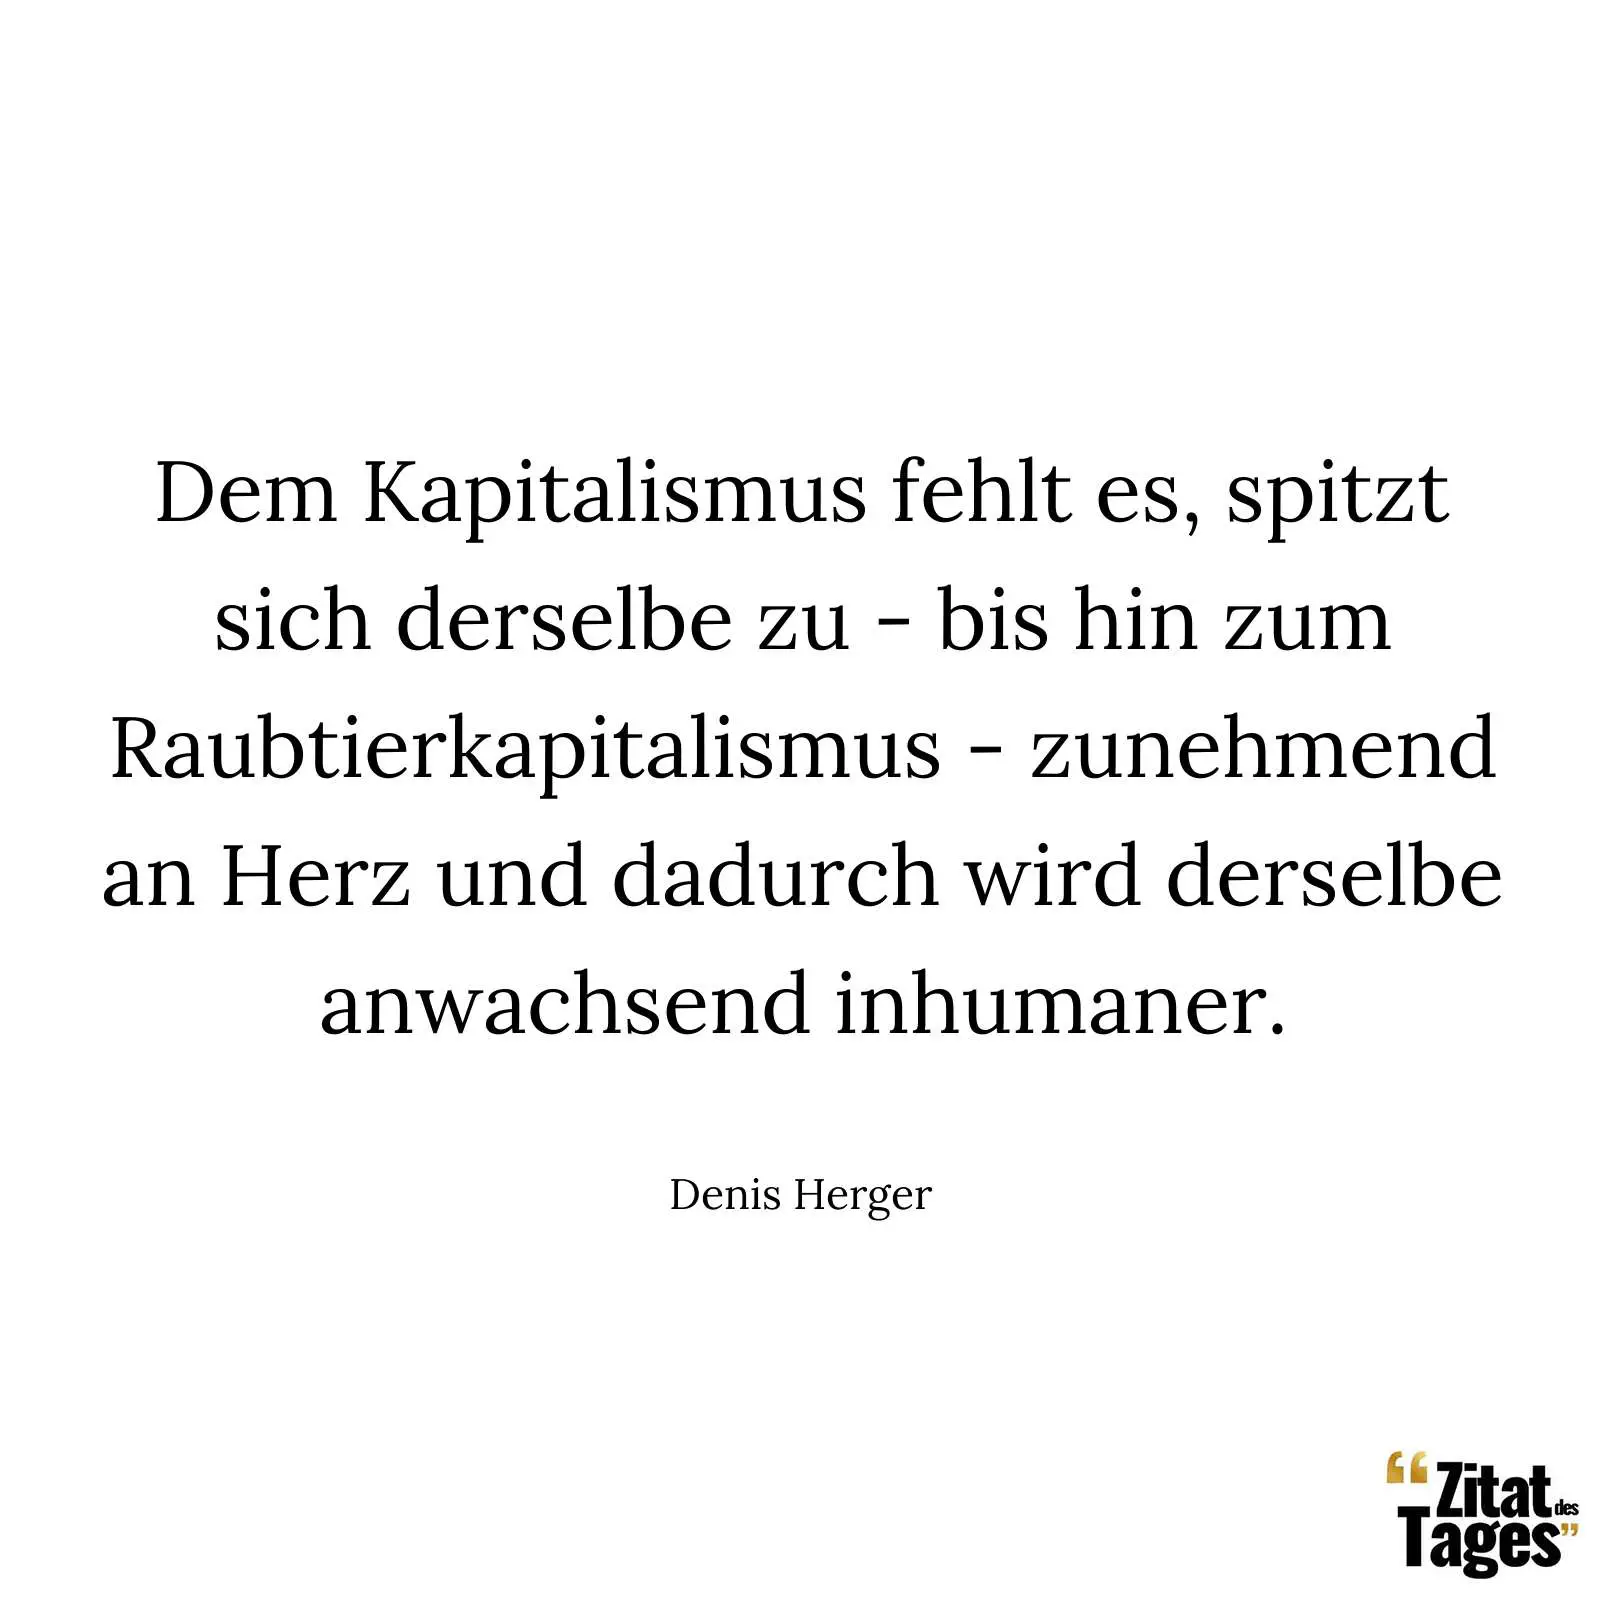 Dem Kapitalismus fehlt es, spitzt sich derselbe zu - bis hin zum Raubtierkapitalismus - zunehmend an Herz und dadurch wird derselbe anwachsend inhumaner. - Denis Herger